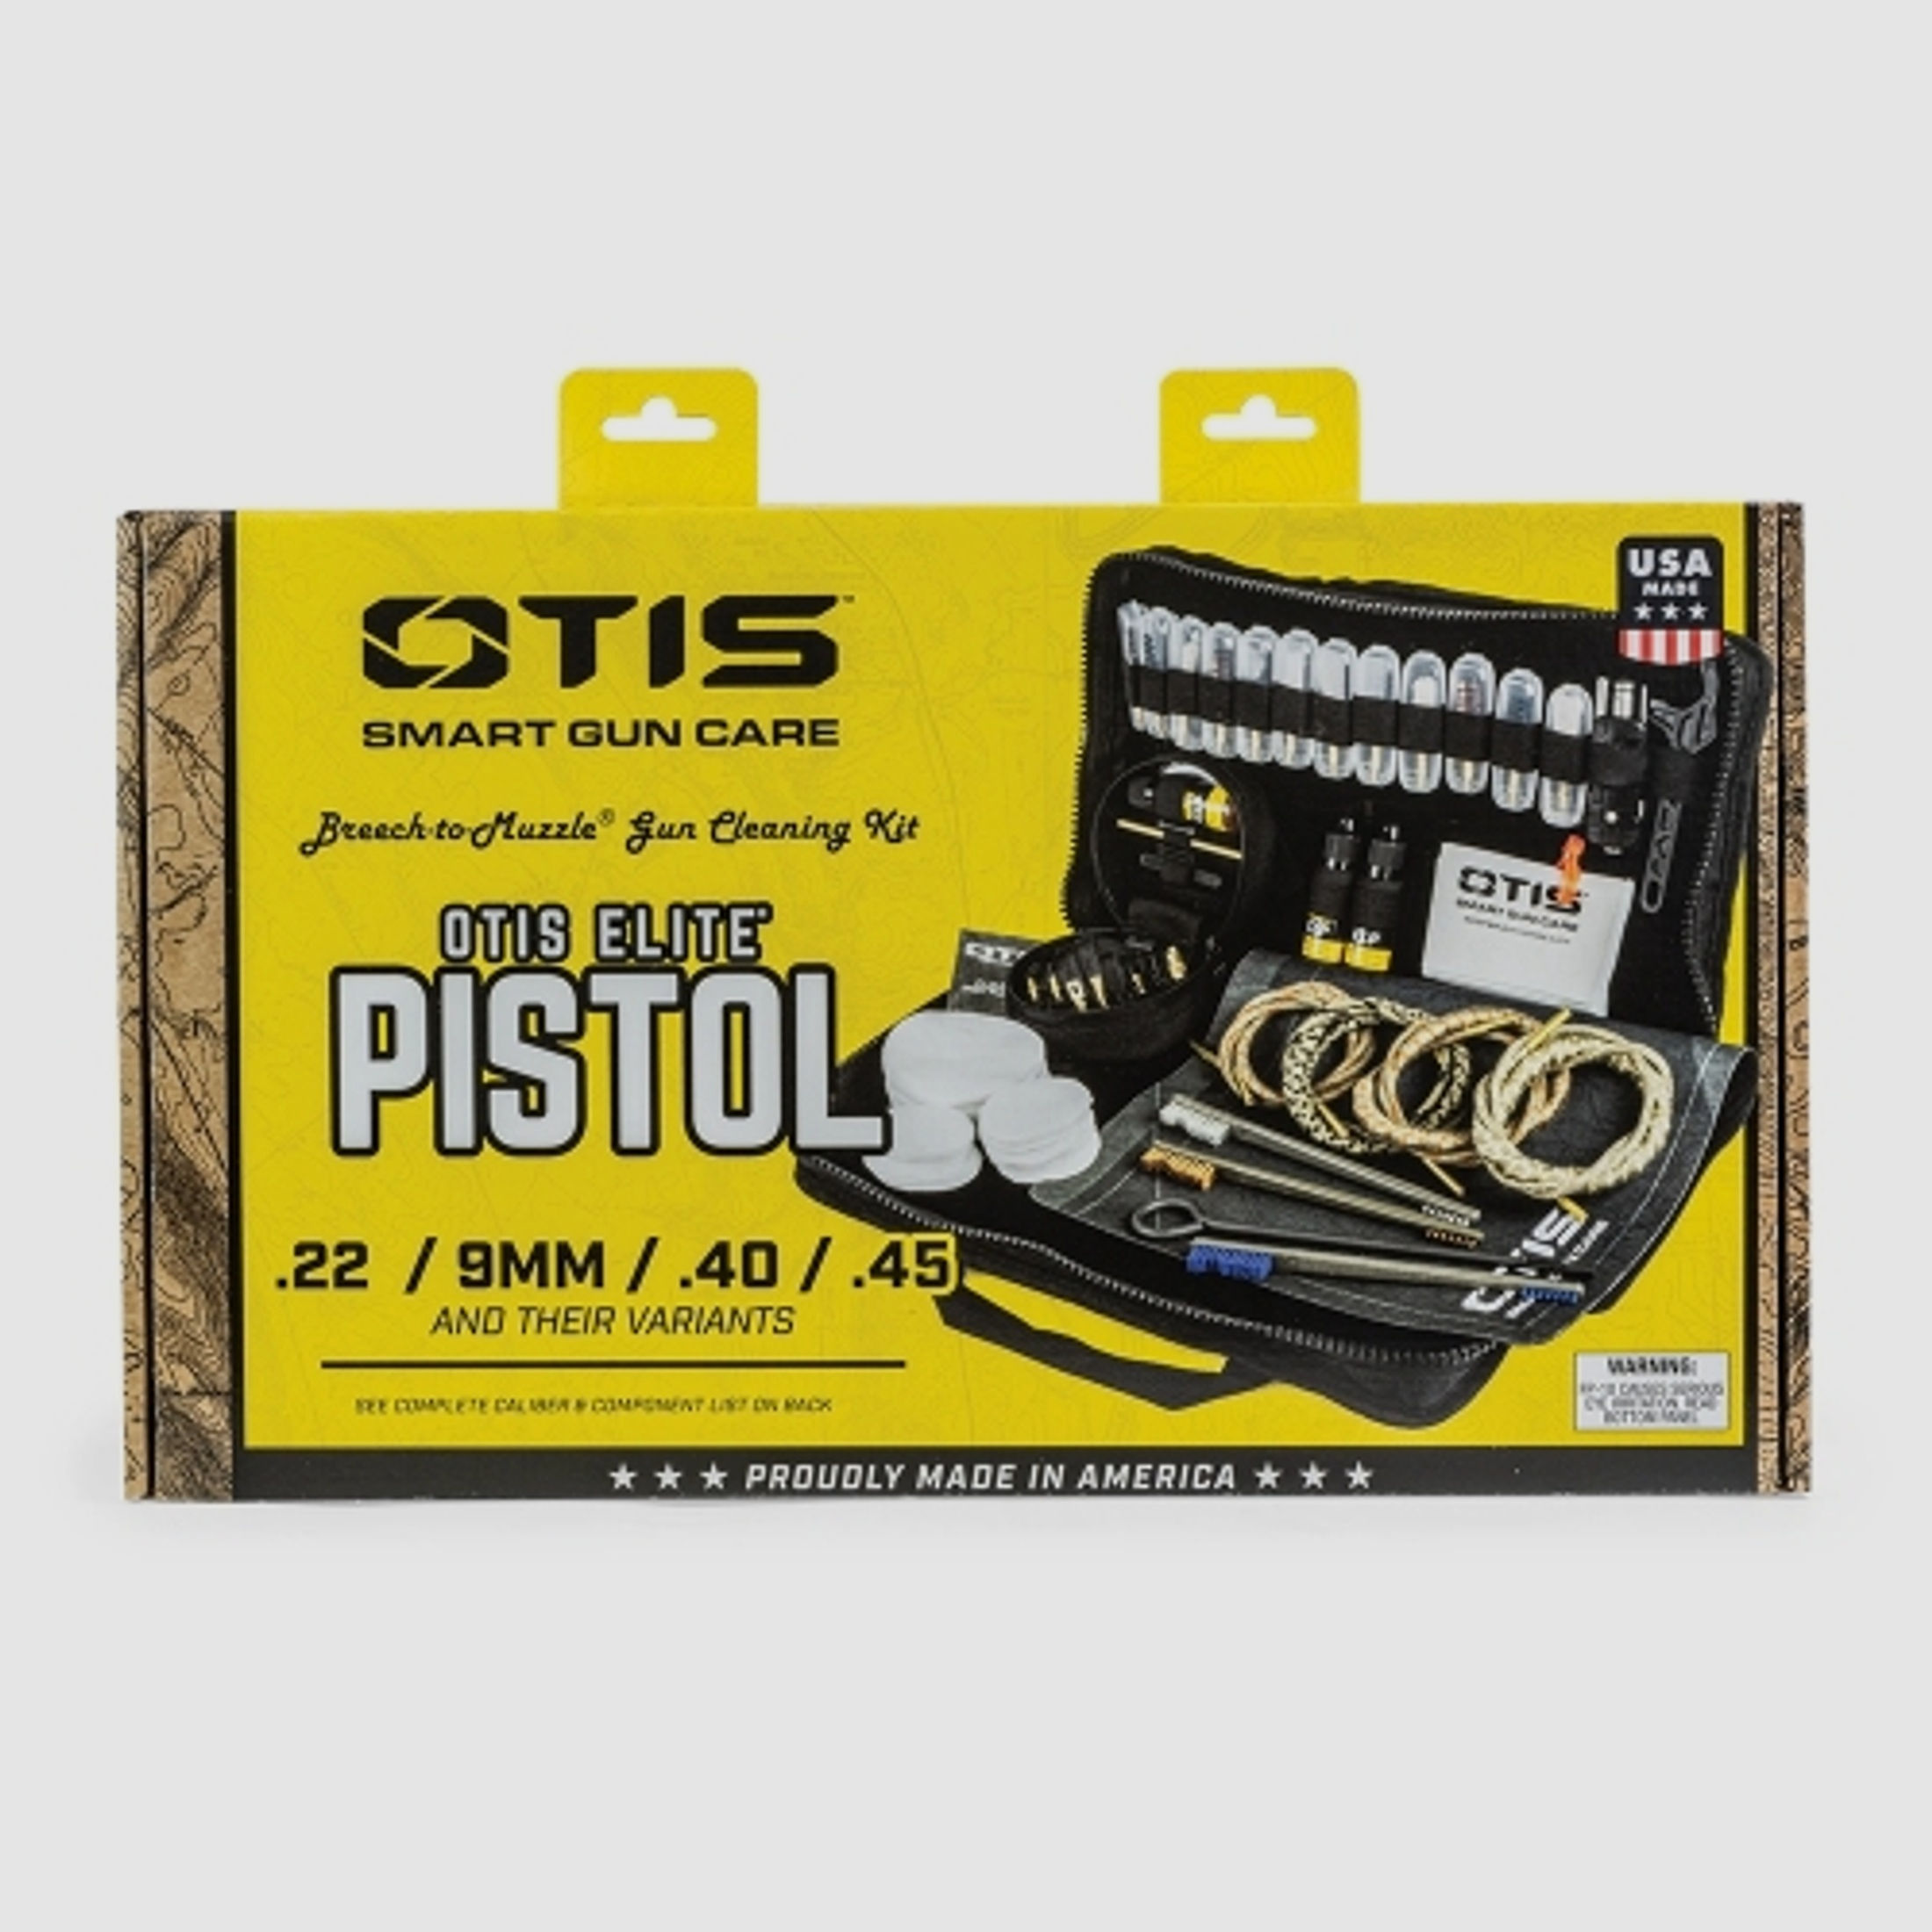 Otis Elite Pistol - Universal Reinigungskit